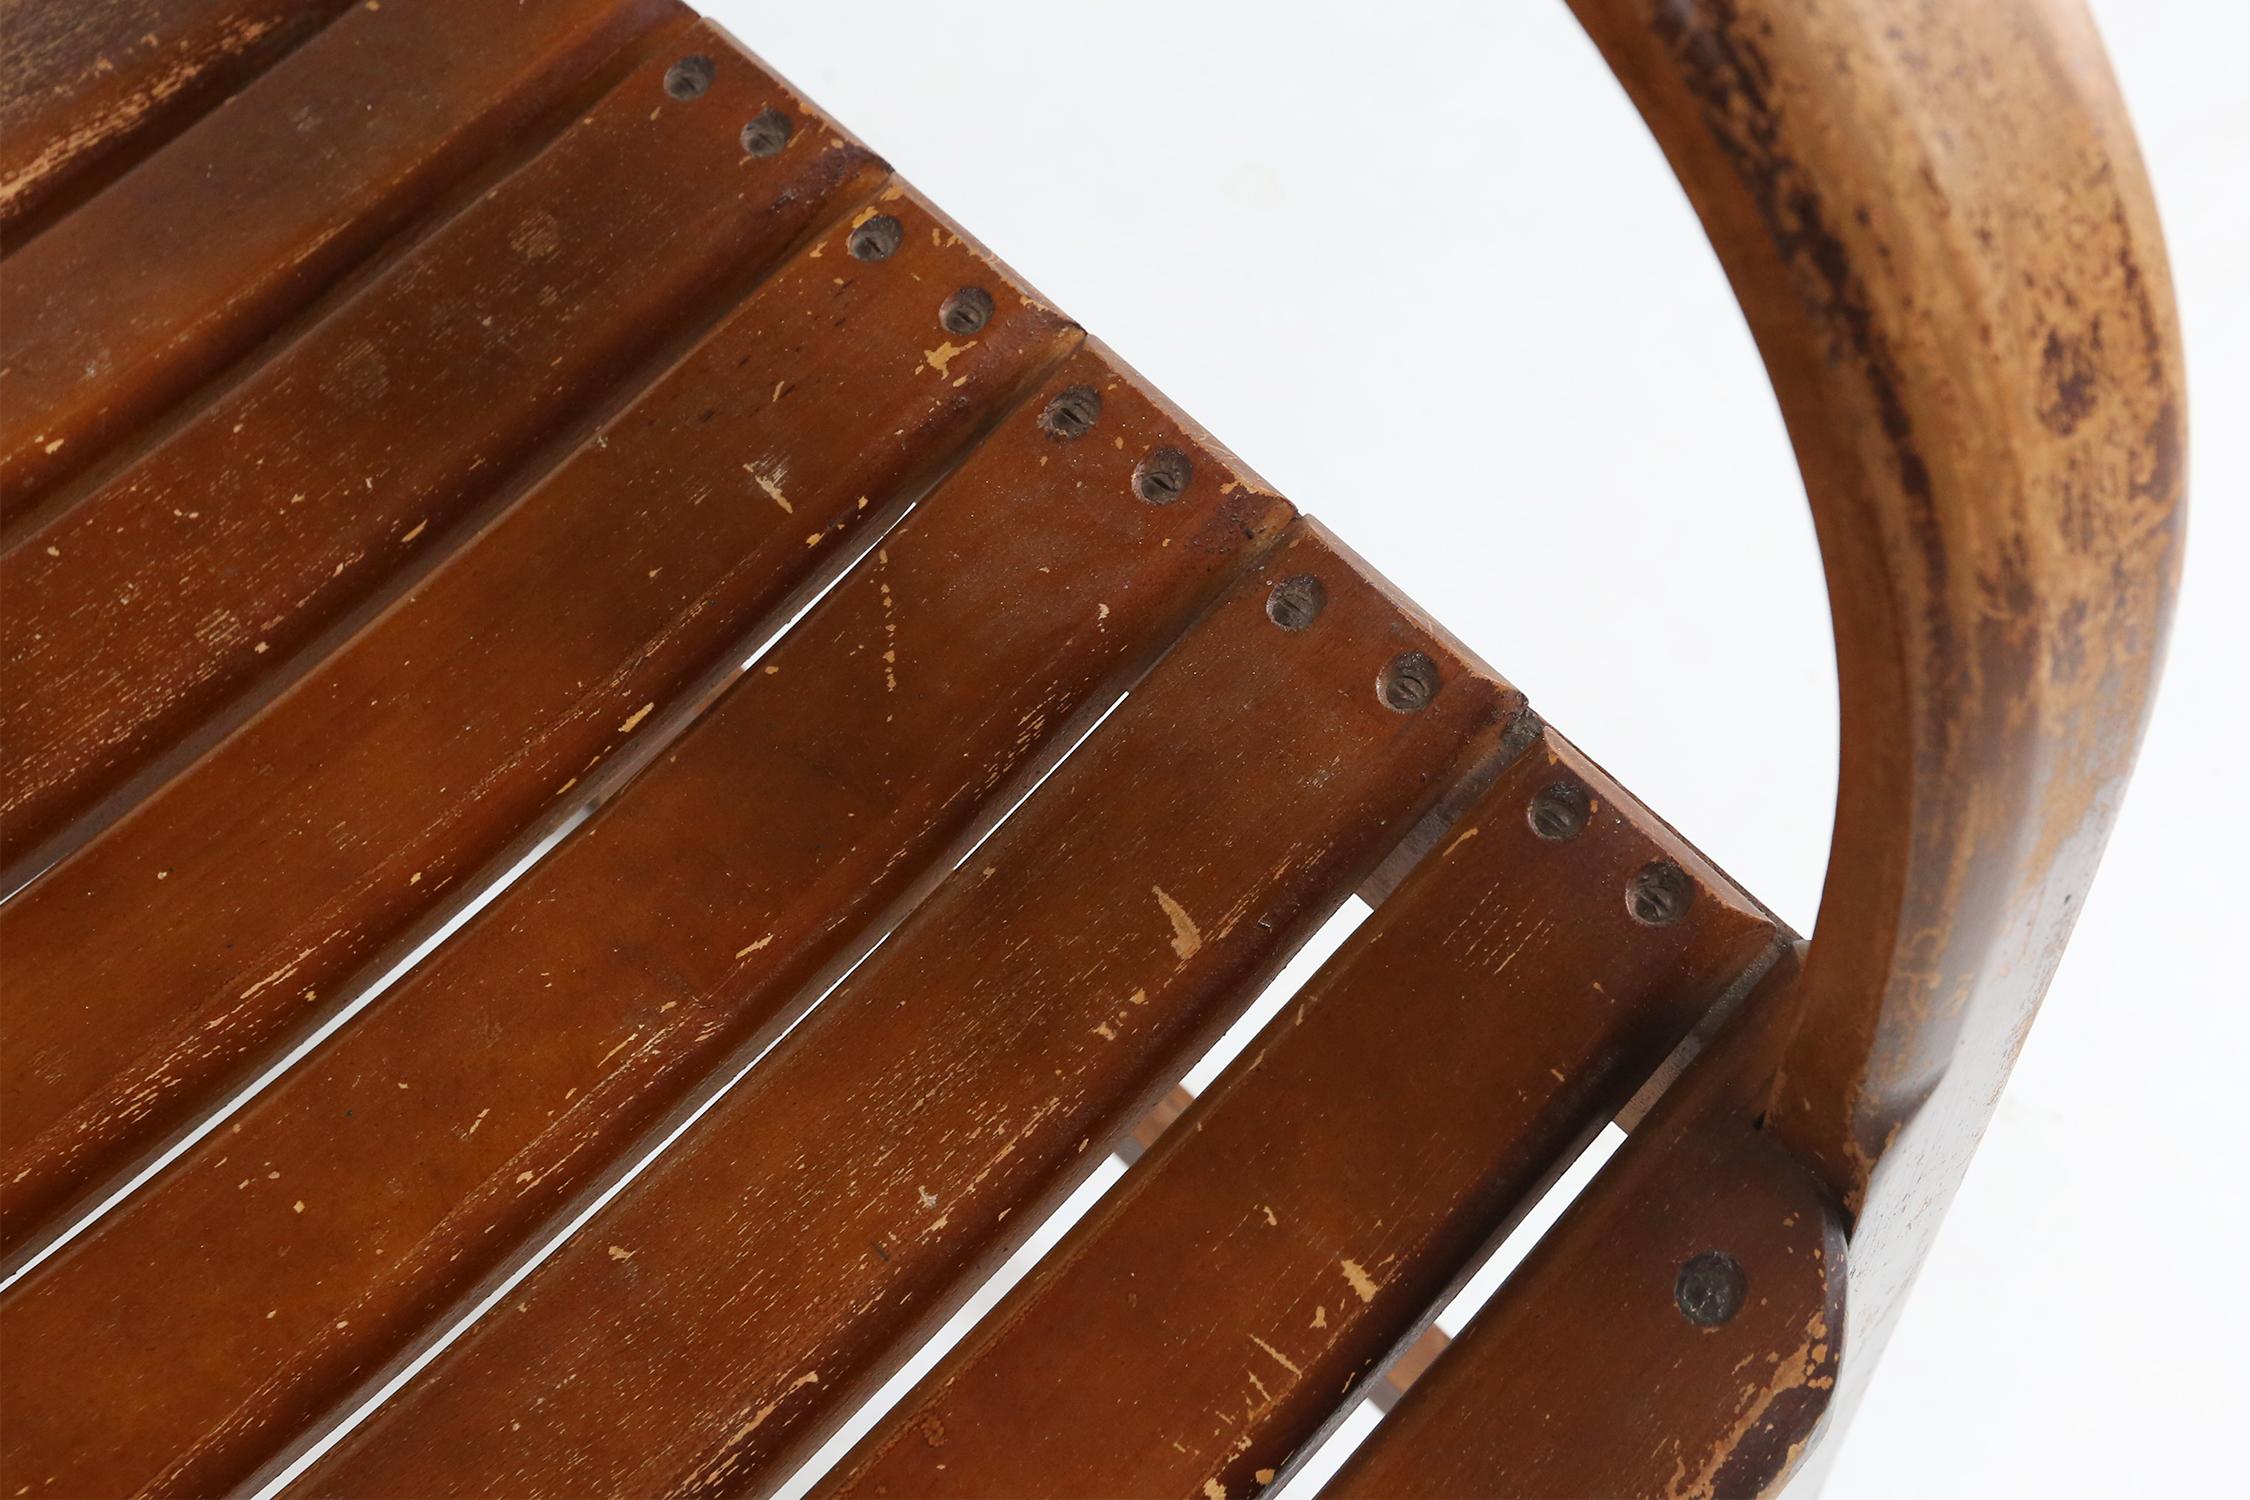 Entdecken Sie den ultimativen Komfort und Stil mit unserem authentischen französischen Stuhl aus den 1930er Jahren.

Der geschichtsträchtige und charaktervolle Stuhl ist fachmännisch aus hochwertigem Holz gefertigt und mit einer einzigartigen Patina